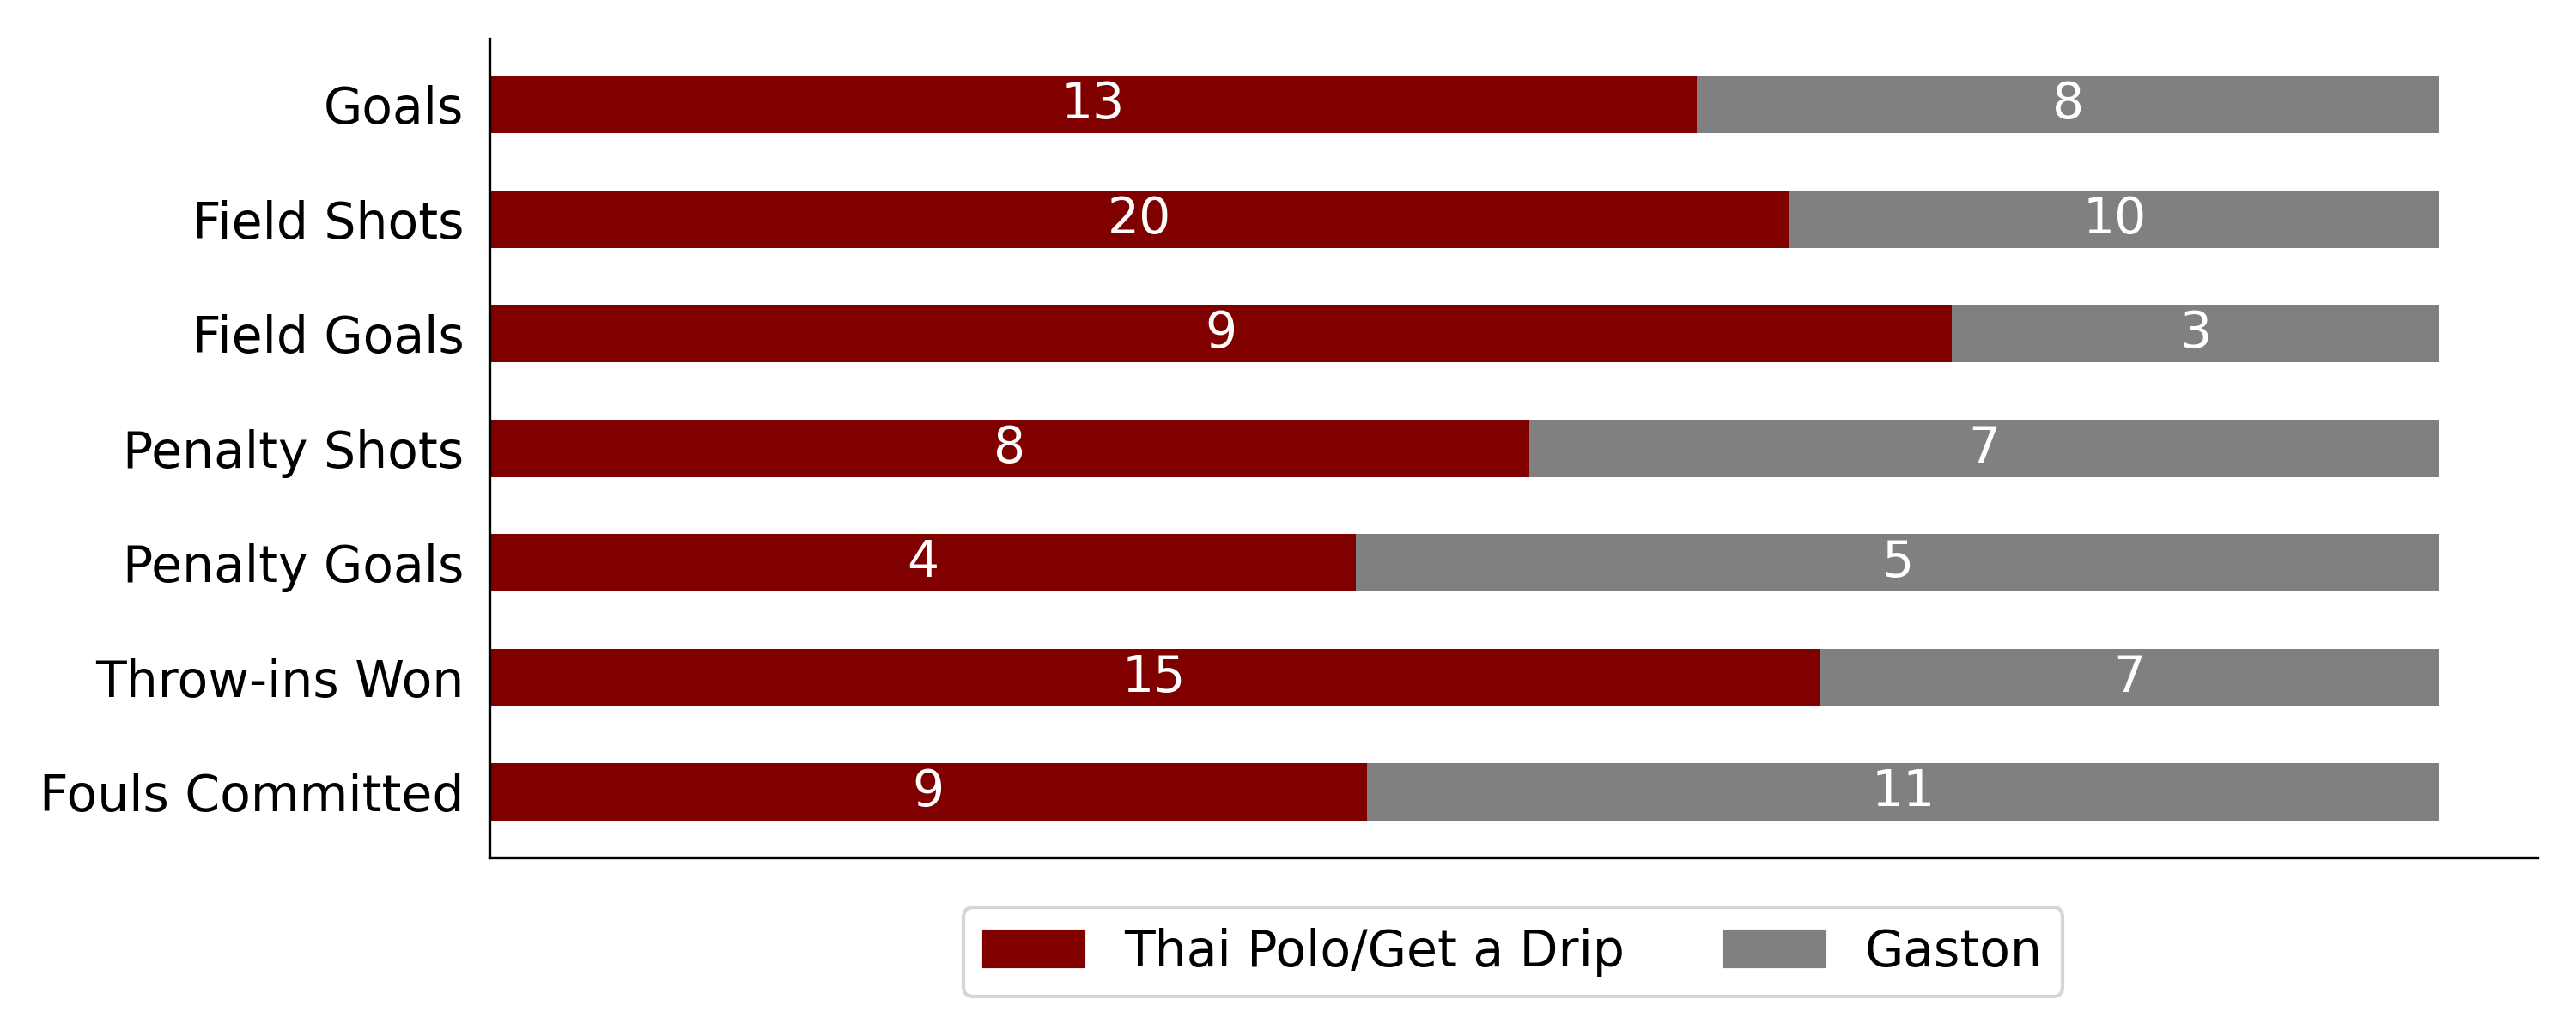 Thai PoloGet a Drip vs Gaston6